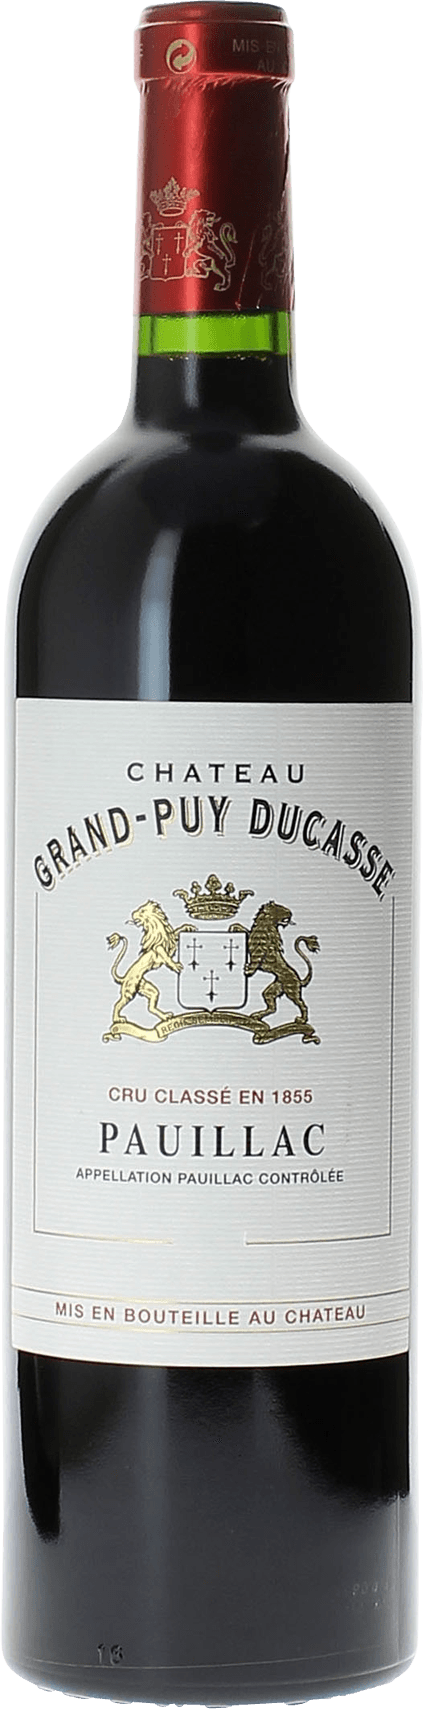 Grand puy ducasse 1989 5 me Grand cru class Pauillac, Bordeaux rouge